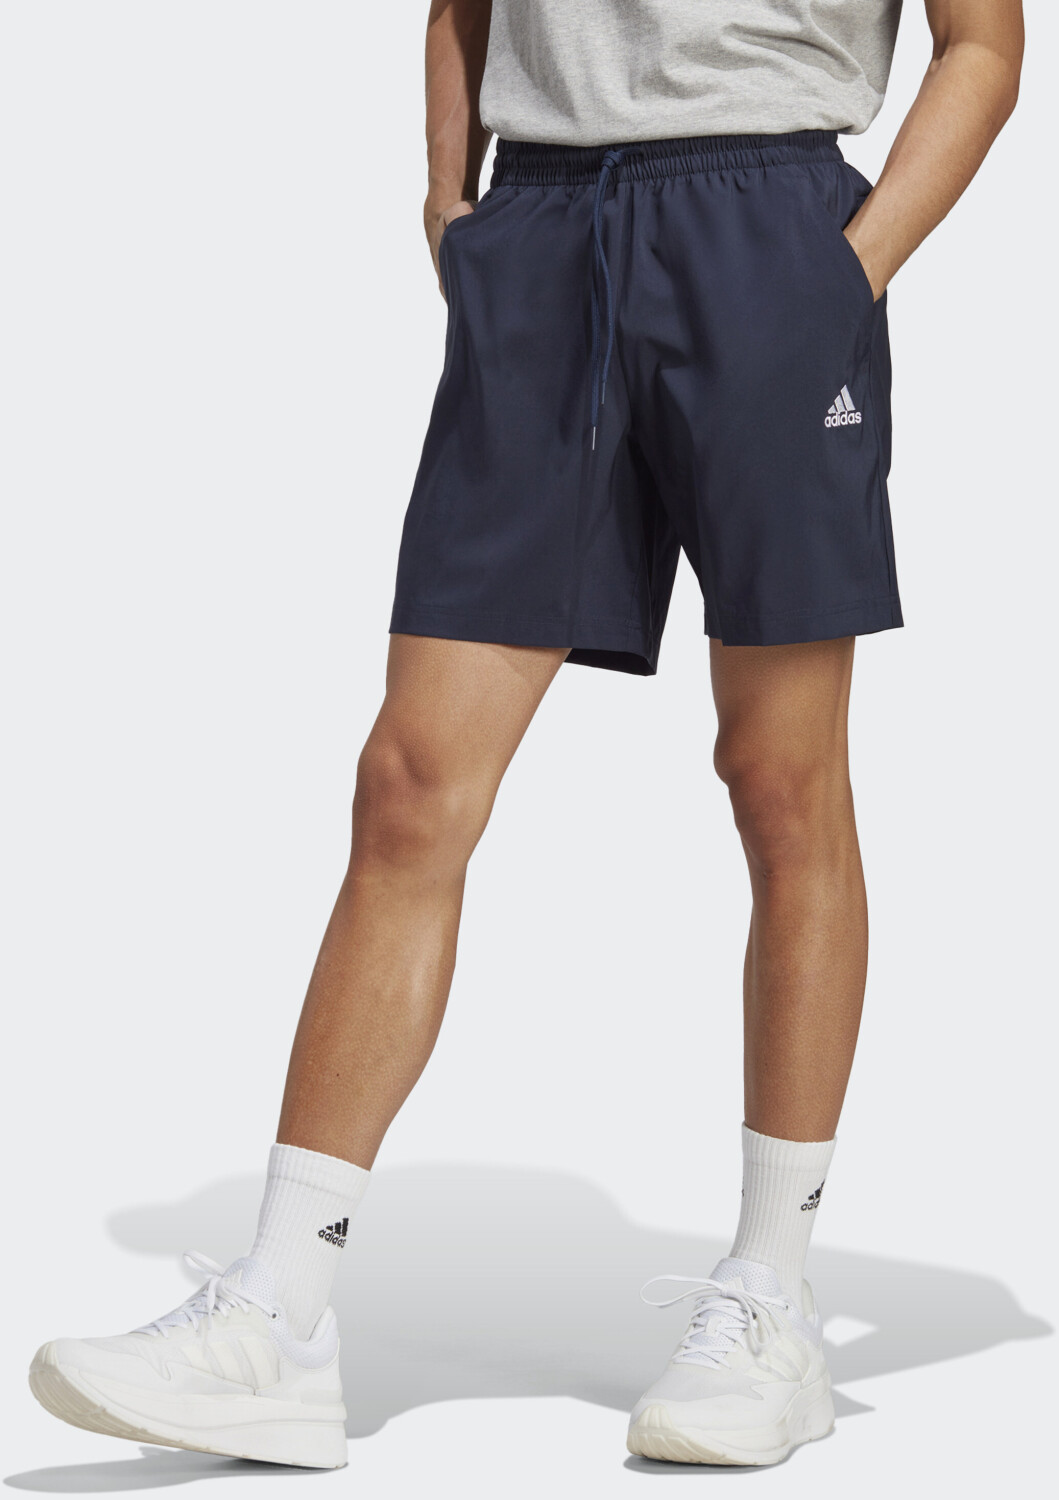 Essentials Herren 17,99 Shorts | Small legend Adidas Short ink € Logo ab Chelsea Preisvergleich bei